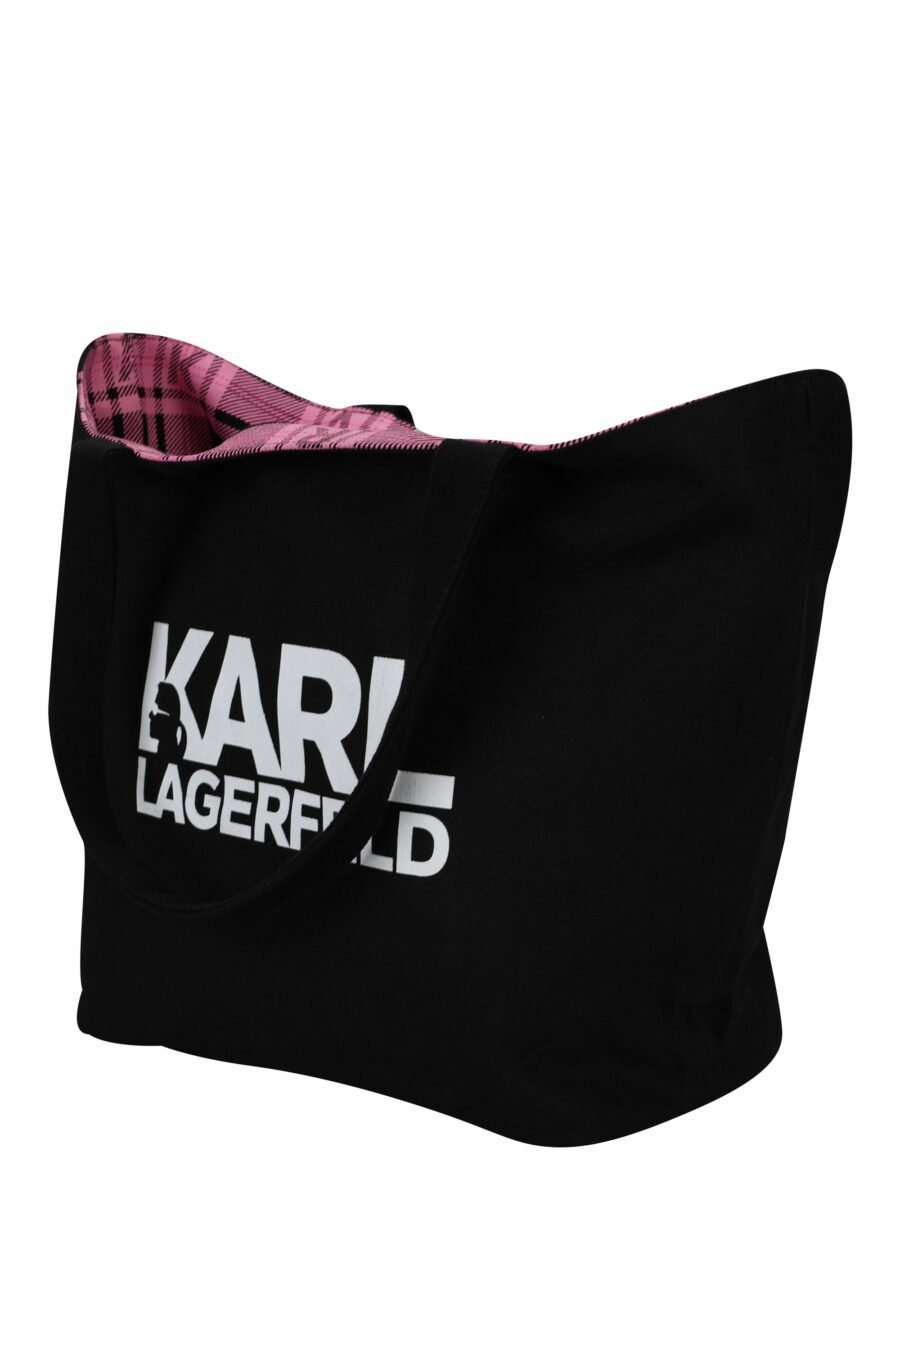 Tote bag reversible negro y rosa con maxilogo "choupette y karl" - 8720744676225 4